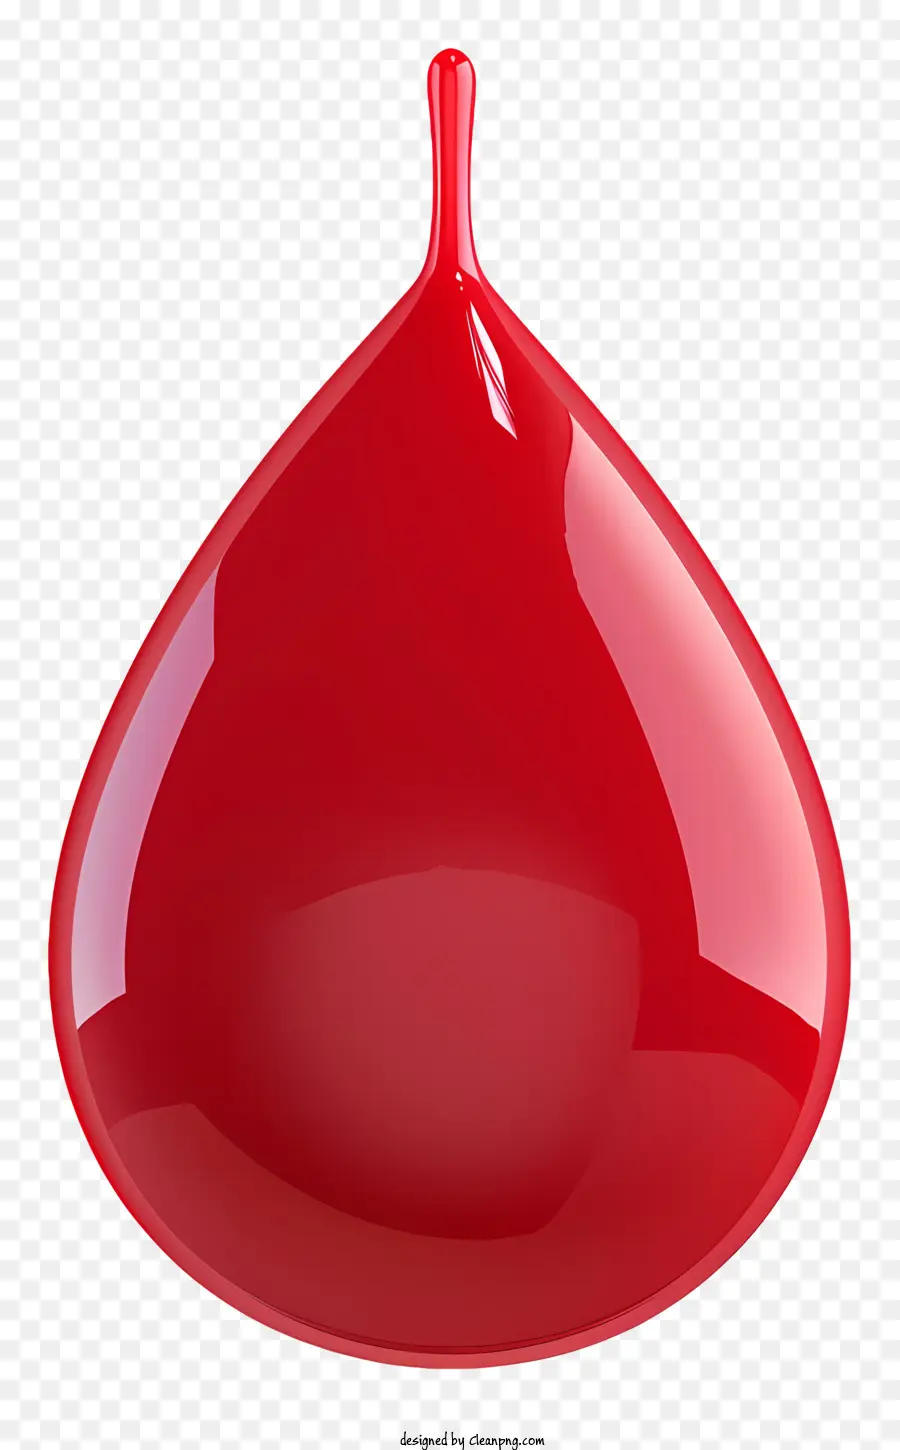 goccia di liquido sangue caduta rossa sospesa - La goccia liquida rossa appare sospesa in aria